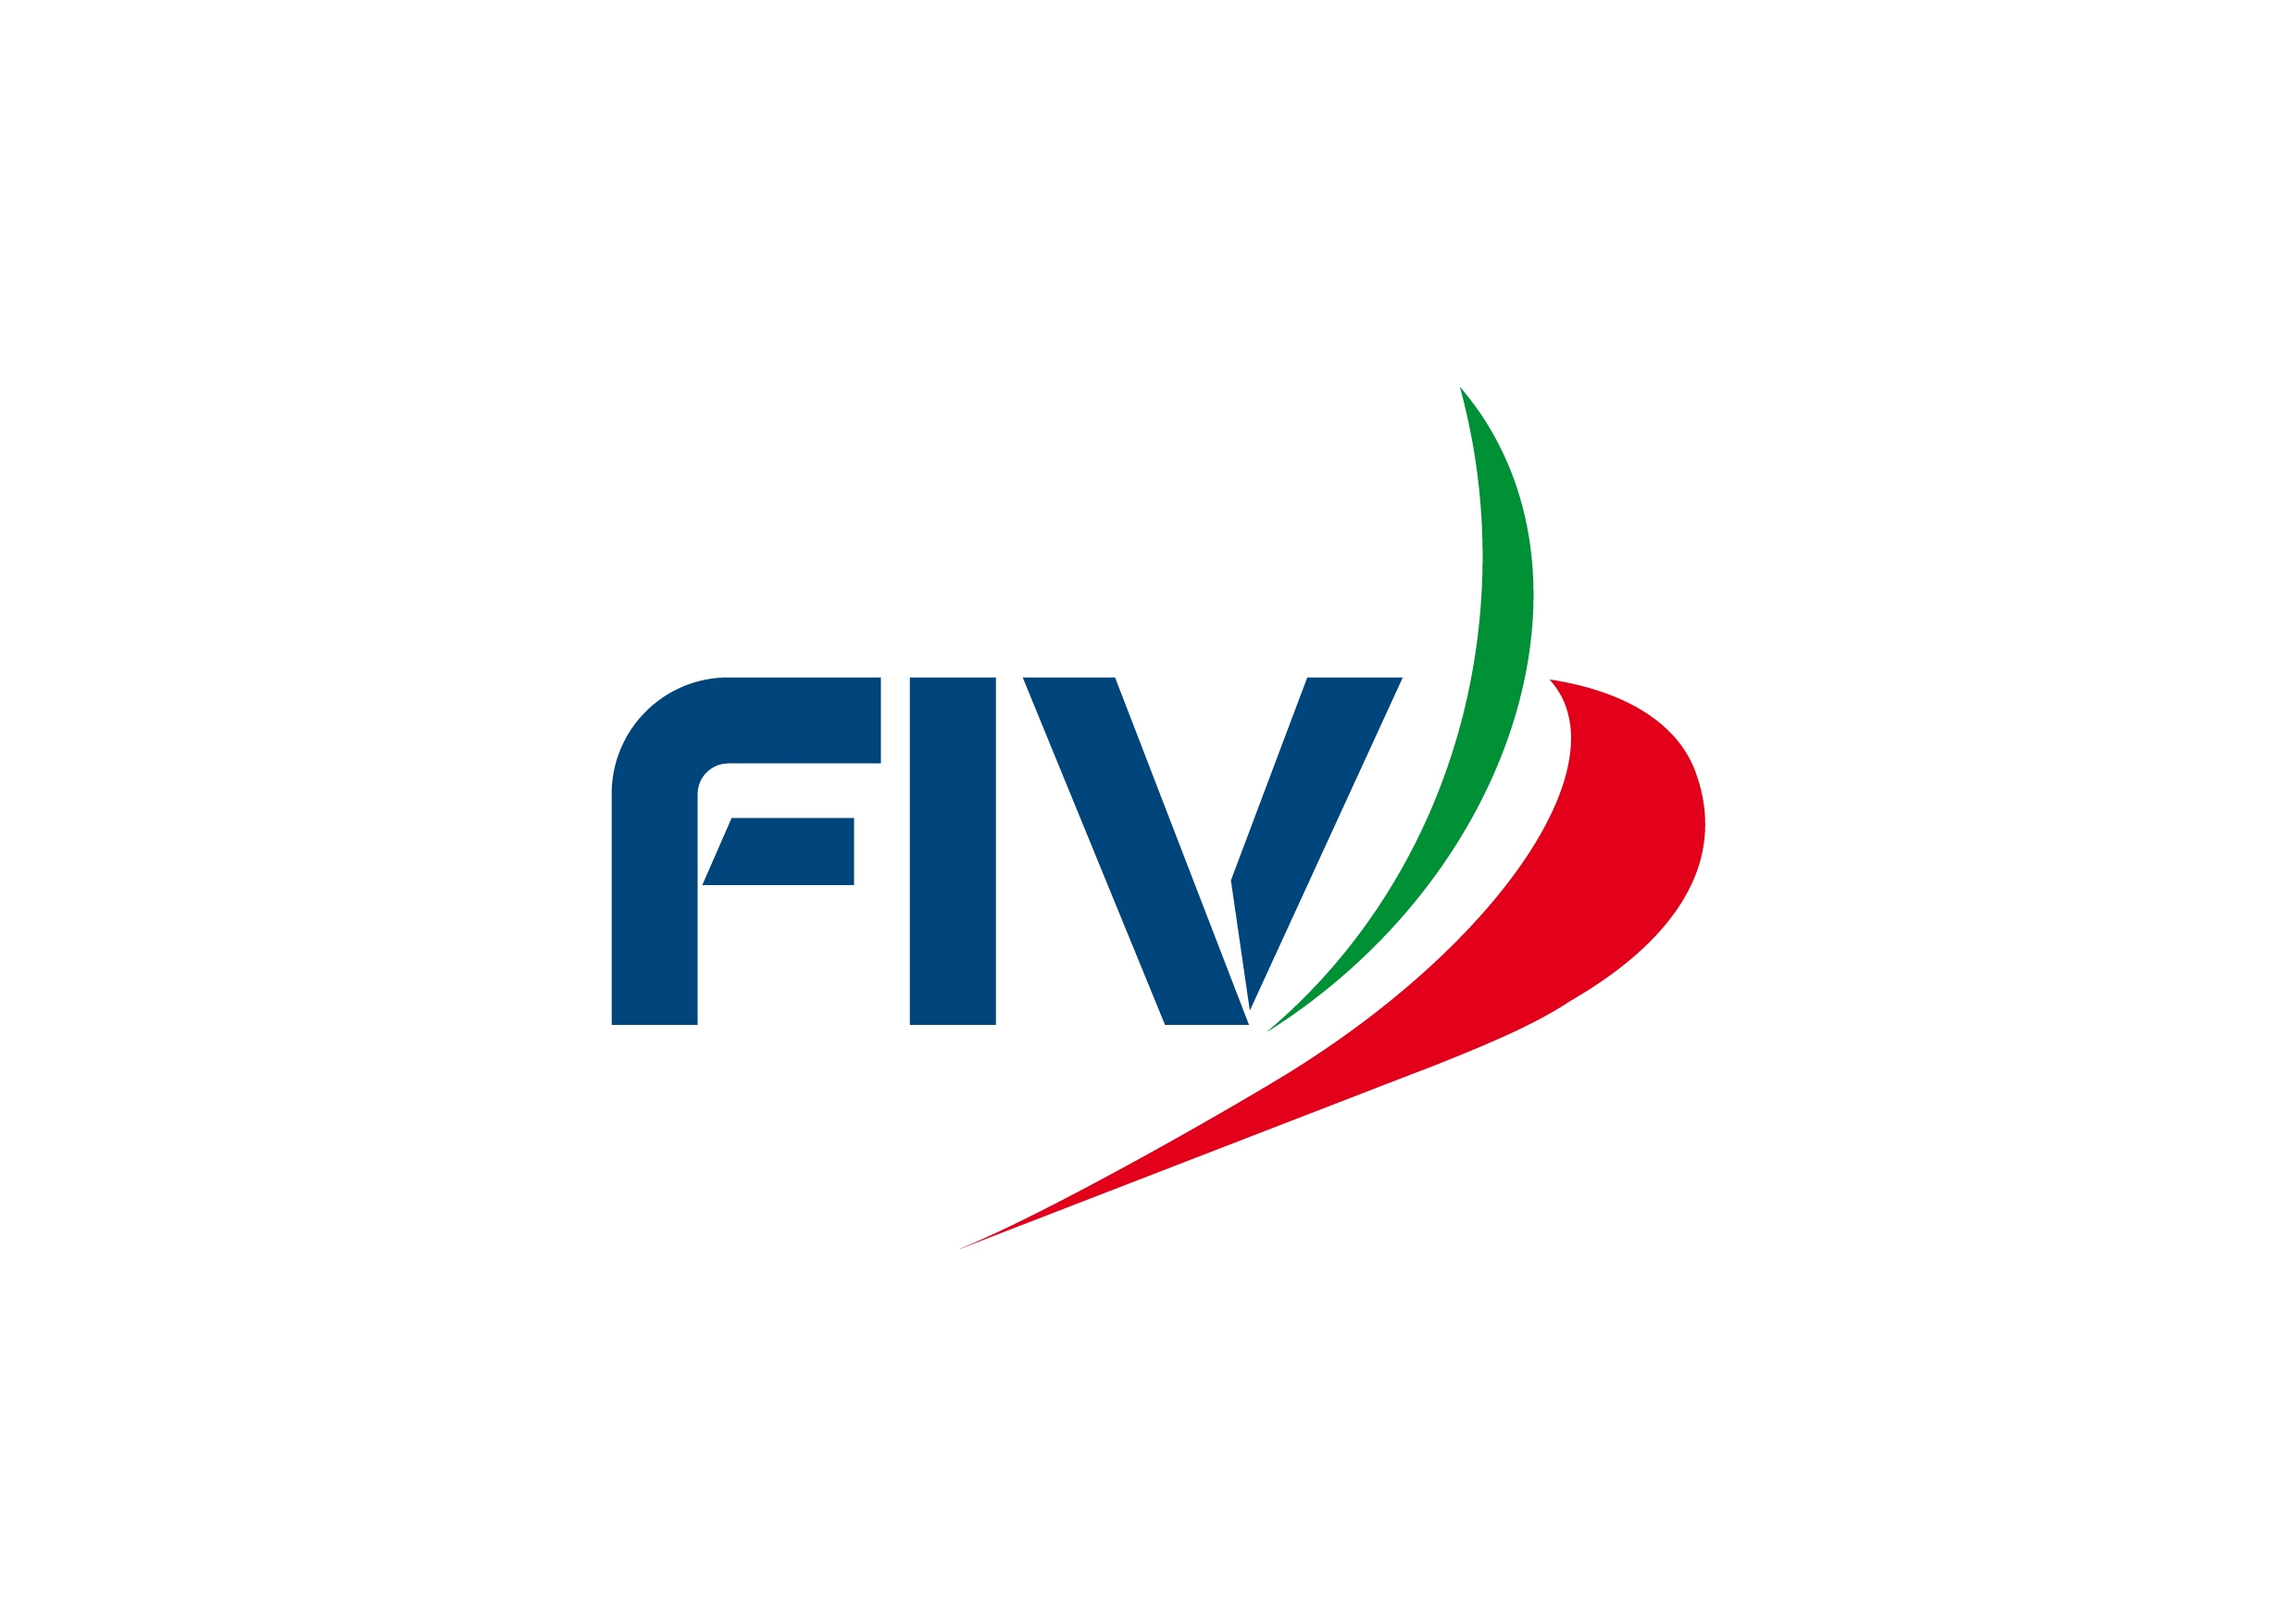 images/fiv/fiv_logo_16.jpg